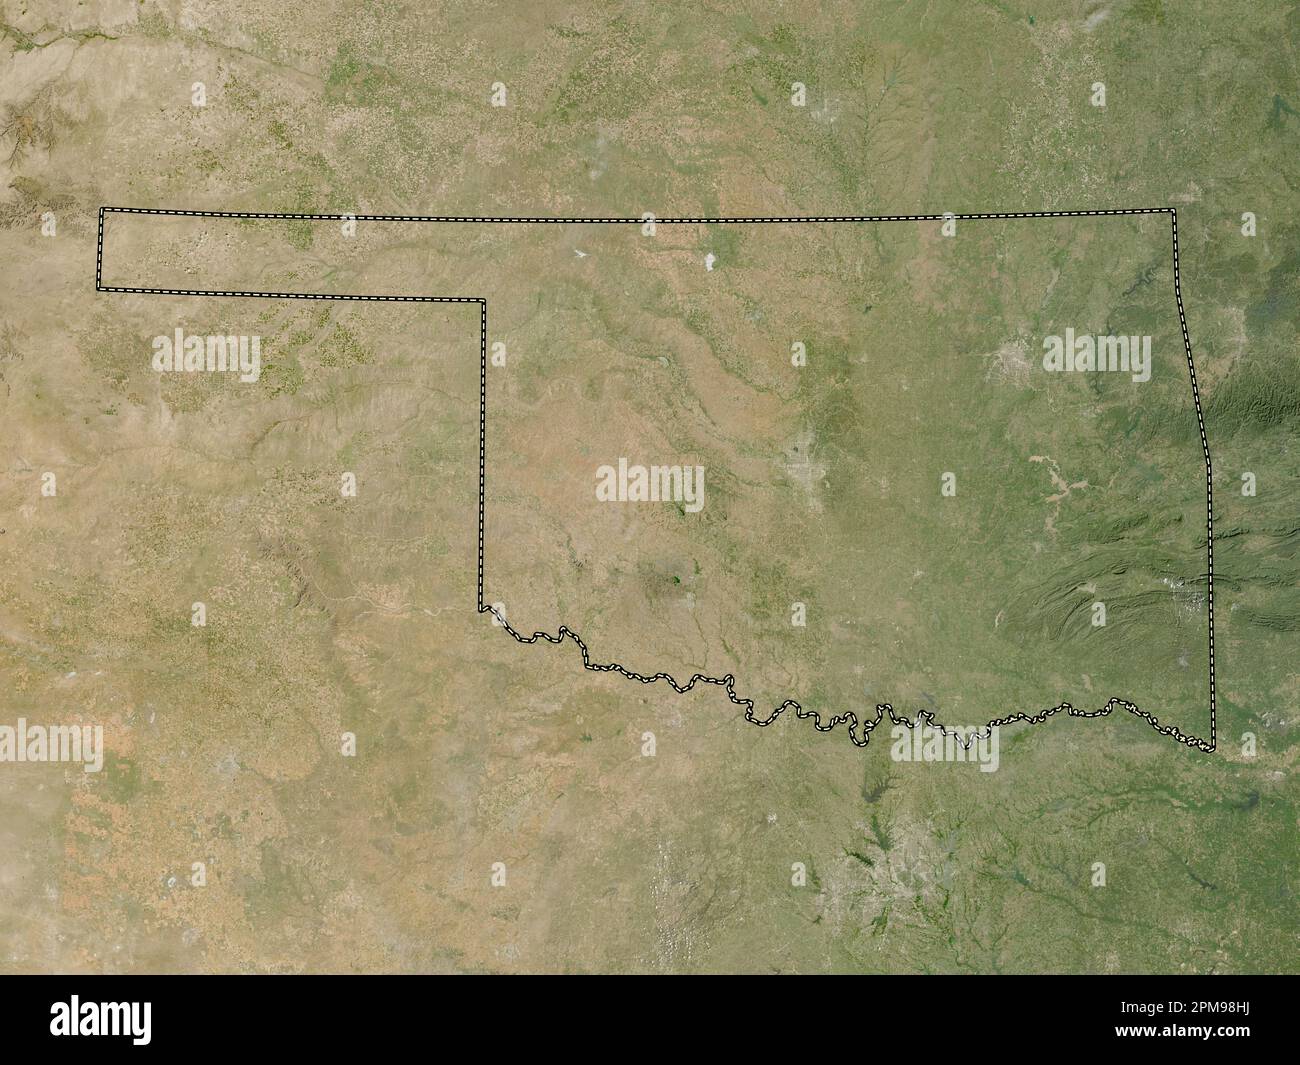 Oklahoma, stato degli Stati Uniti d'America. Mappa satellitare a bassa risoluzione Foto Stock